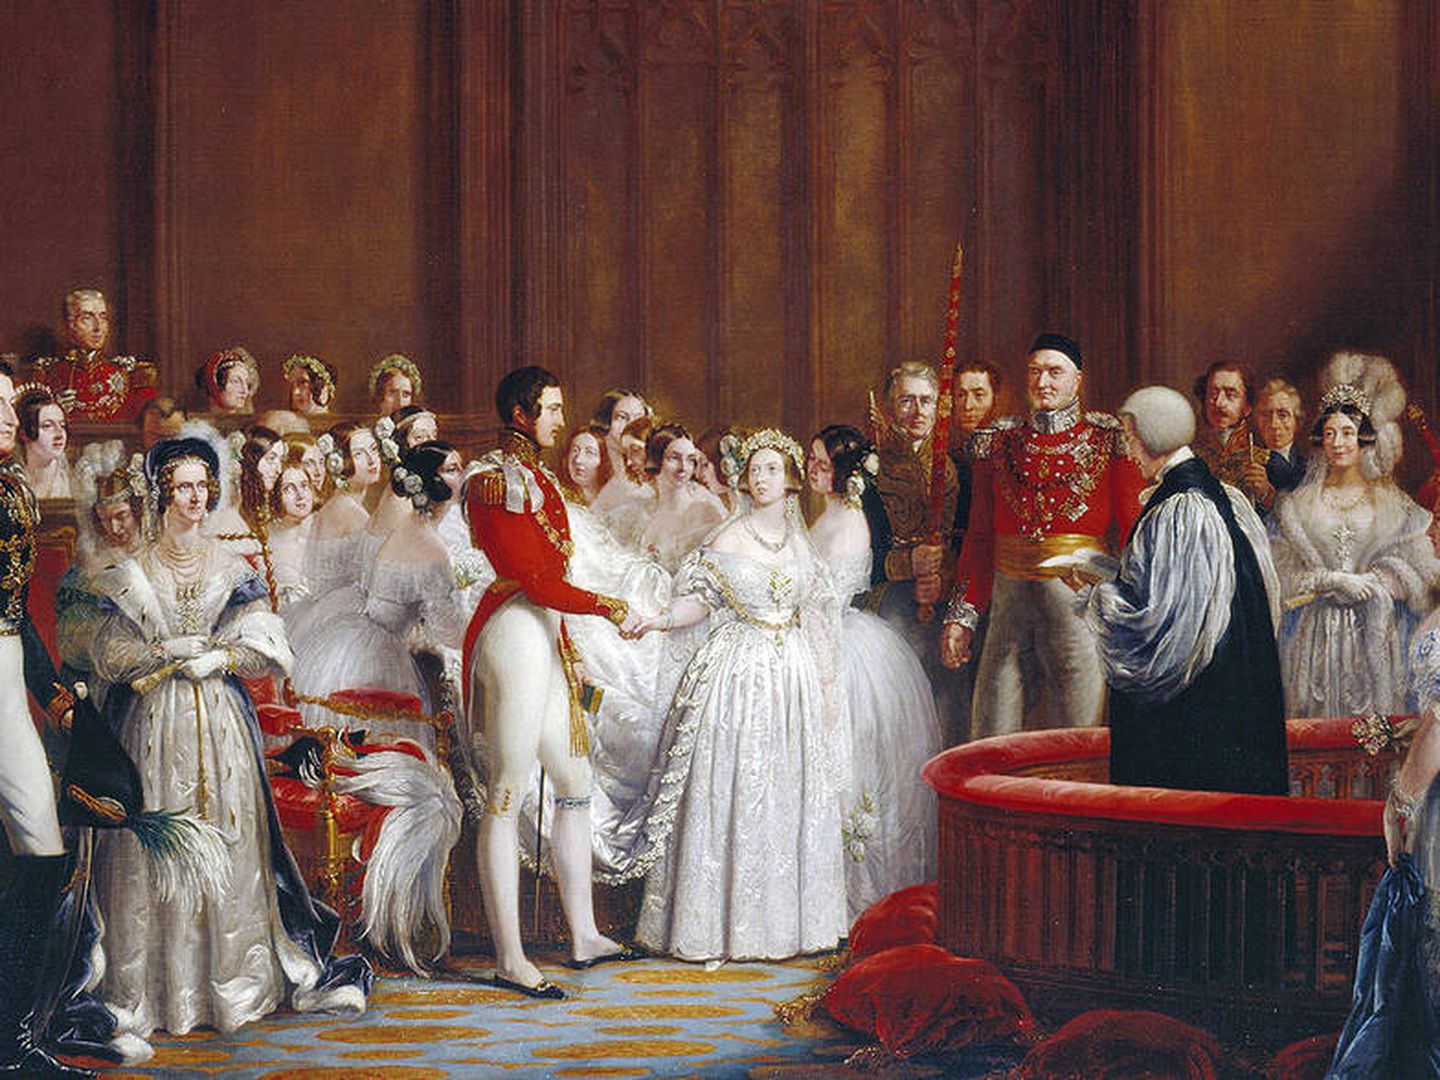 La boda de la Reina Victoria. (Wikipedia)